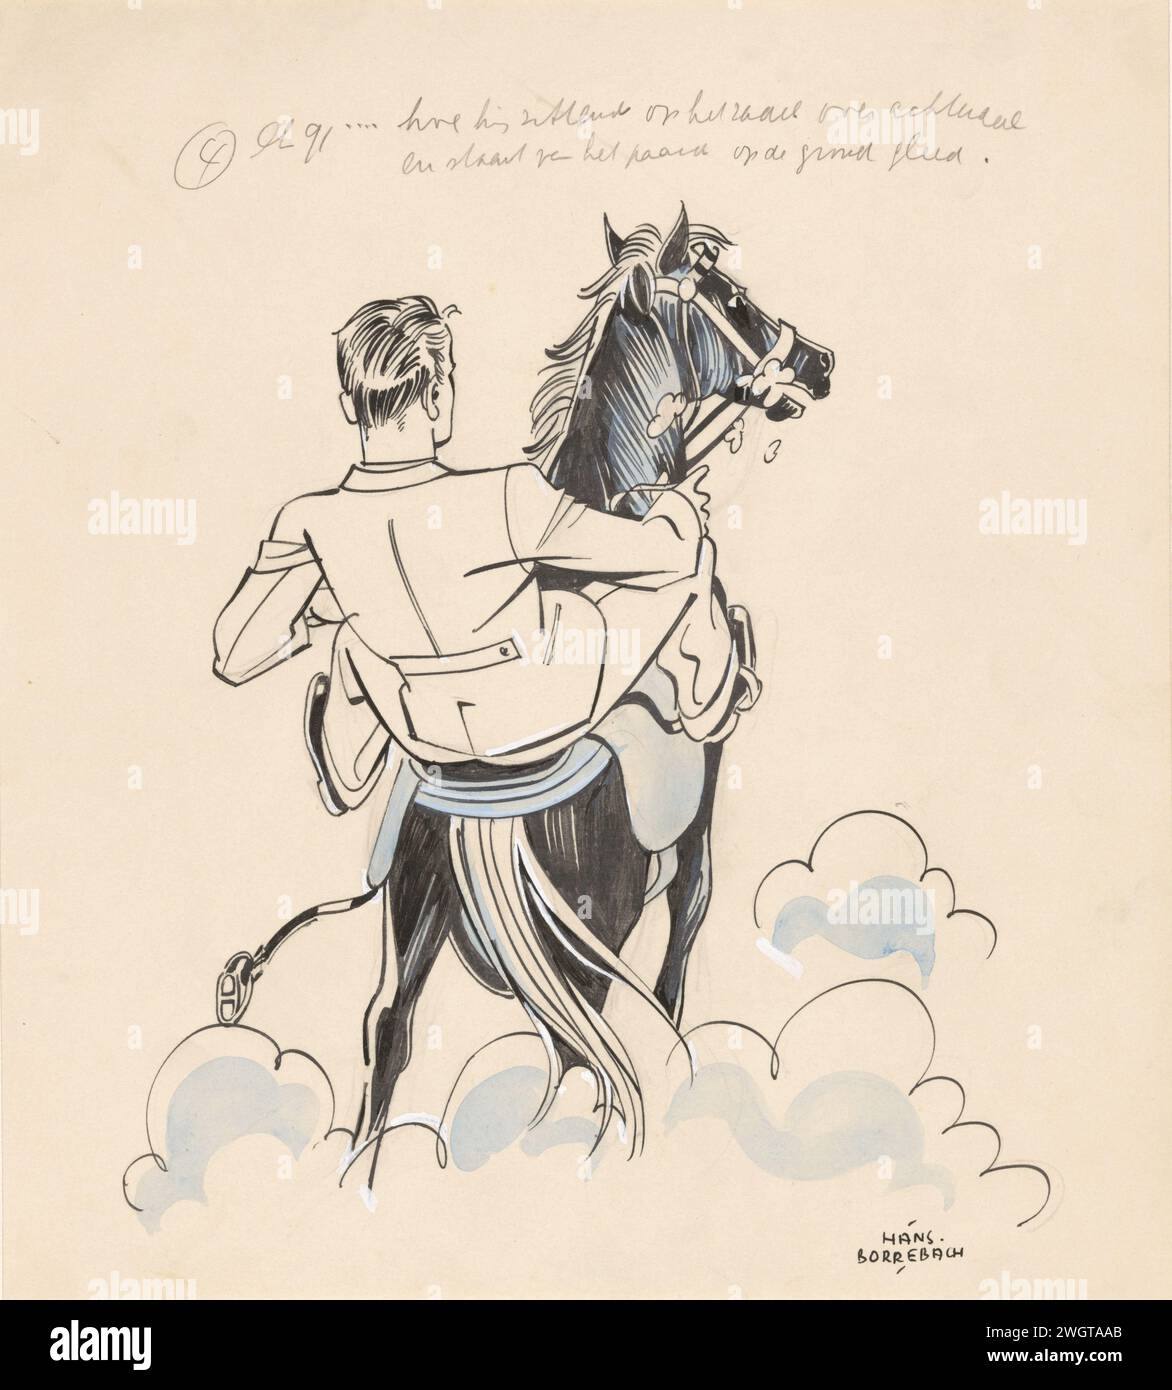 L'homme glisse d'un cheval derrière, dans ou avant 1940 - c. 1945 dessin L'homme a un pied dans l'étrier, l'autre a été tiré de lui. Des nuages de poussière peuvent être vus autour des pieds du cheval. papier. Encre de Inde (encre). encre. peinture de pont. stylo crayon / cheval de brosse. chute Banque D'Images